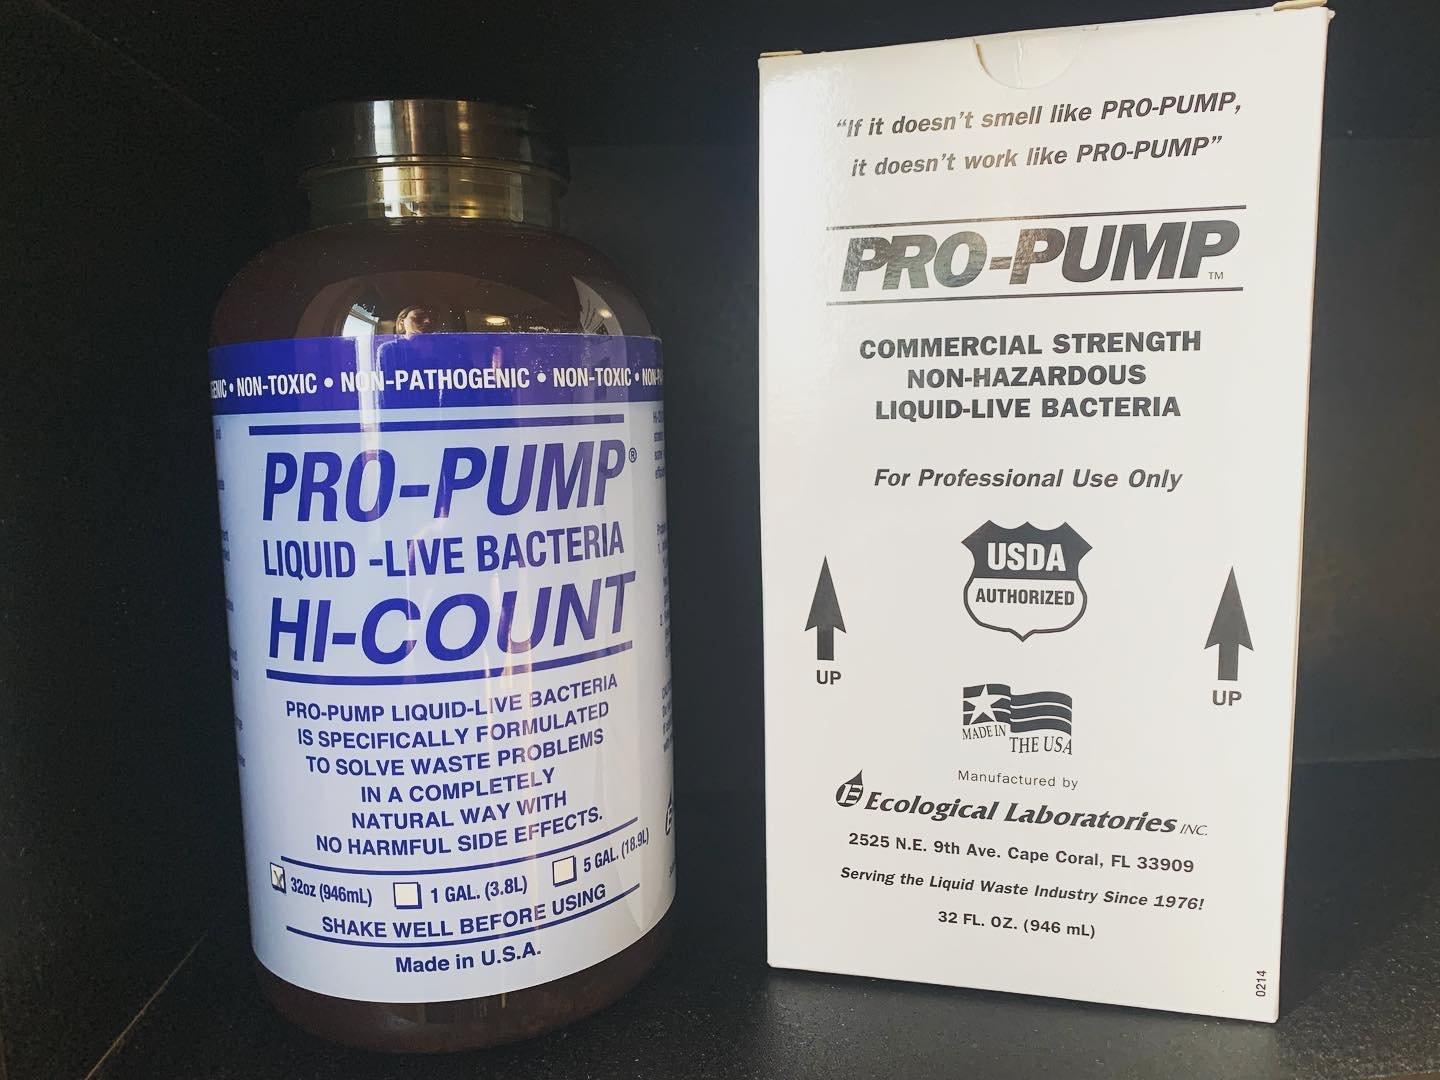 Pro Pump Hi-Count Live Bacteria